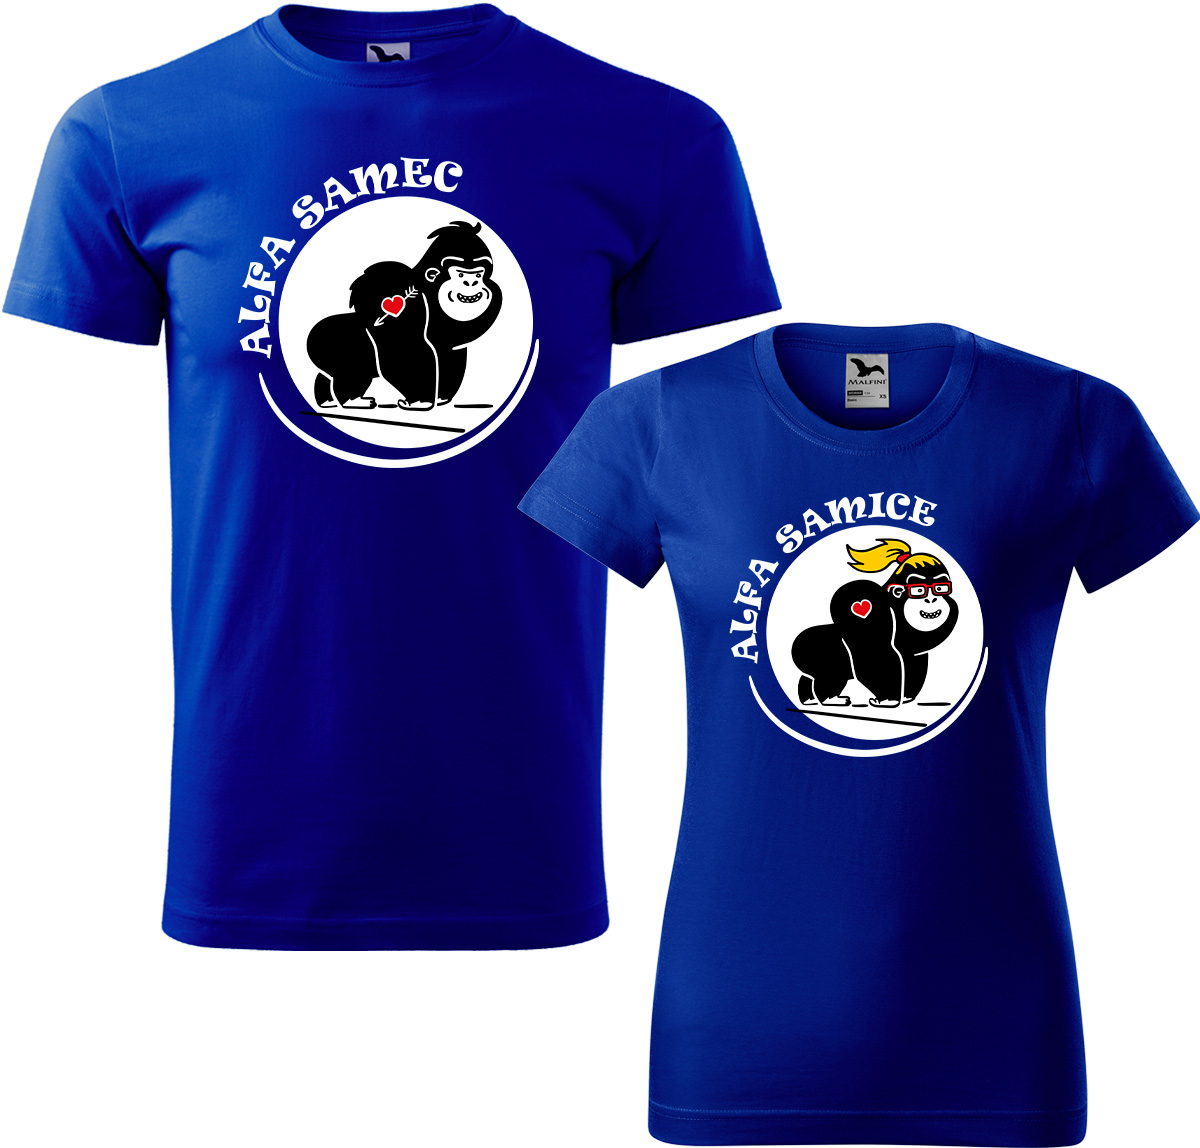 Trička pro páry - Alfa samec a alfa samice Barva: Královská modrá (05), Velikost dámské tričko: M, Velikost pánské tričko: M